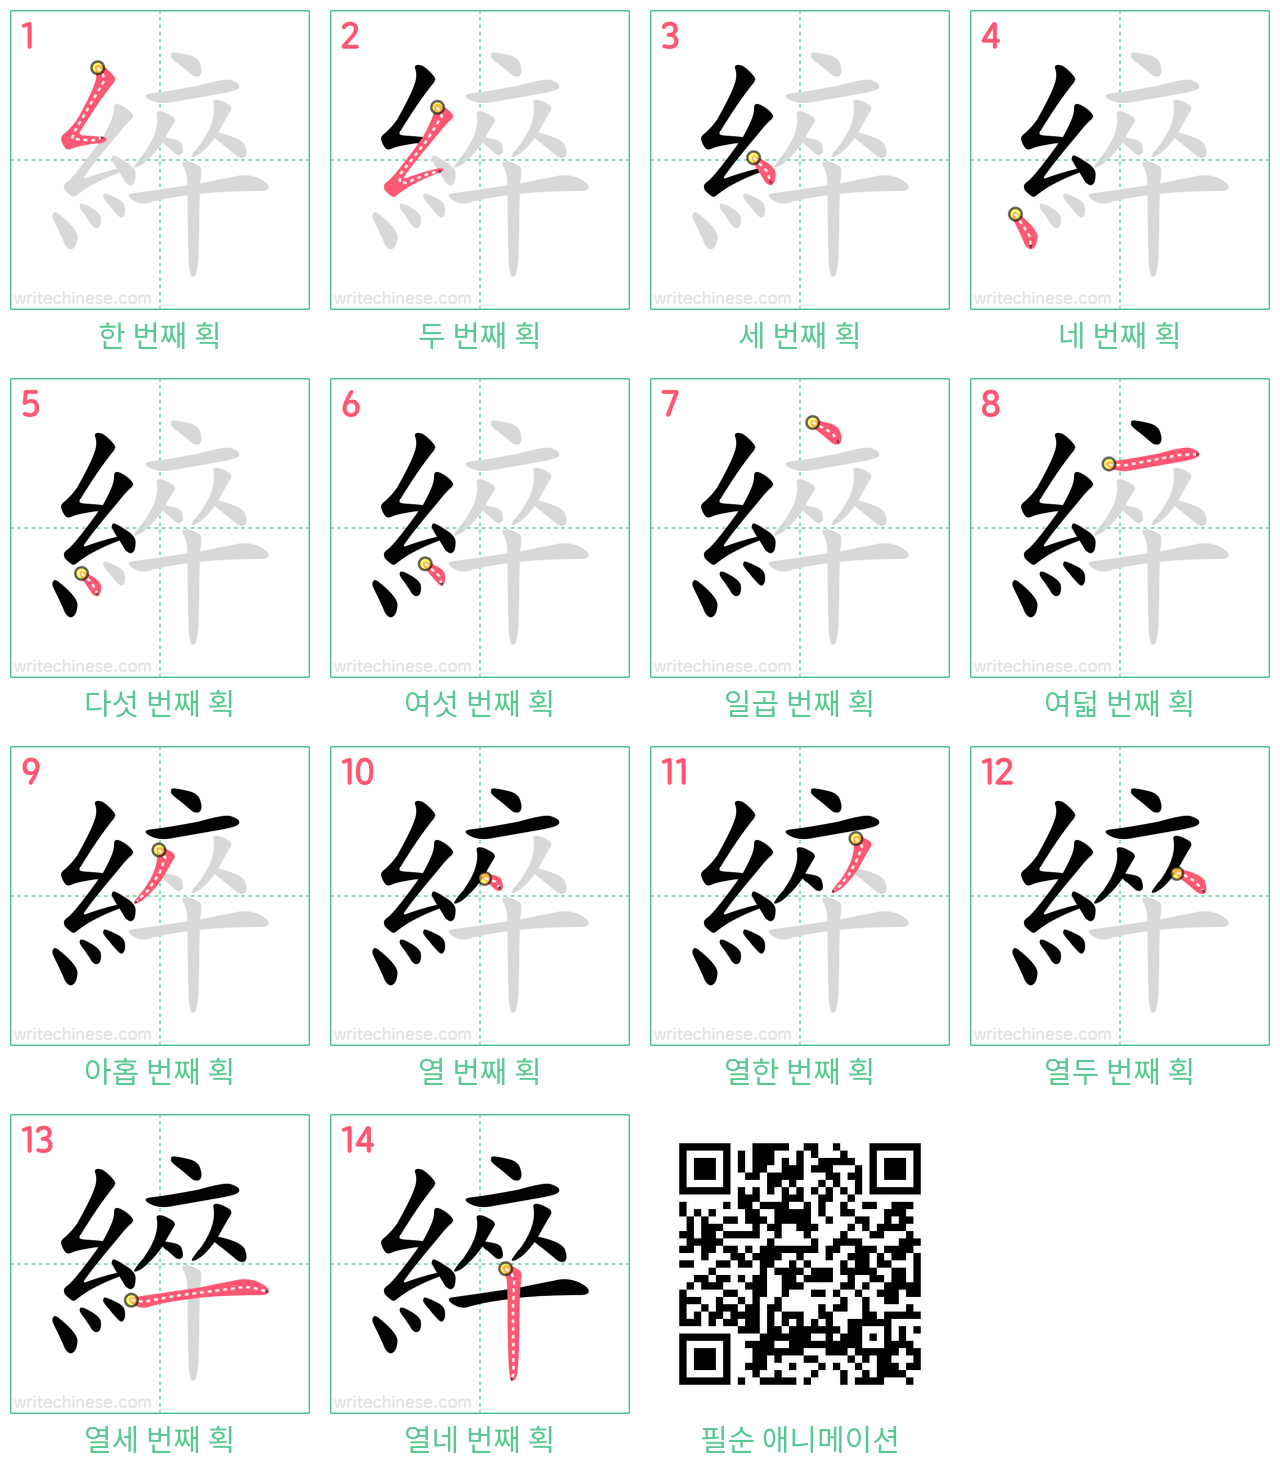 綷 step-by-step stroke order diagrams